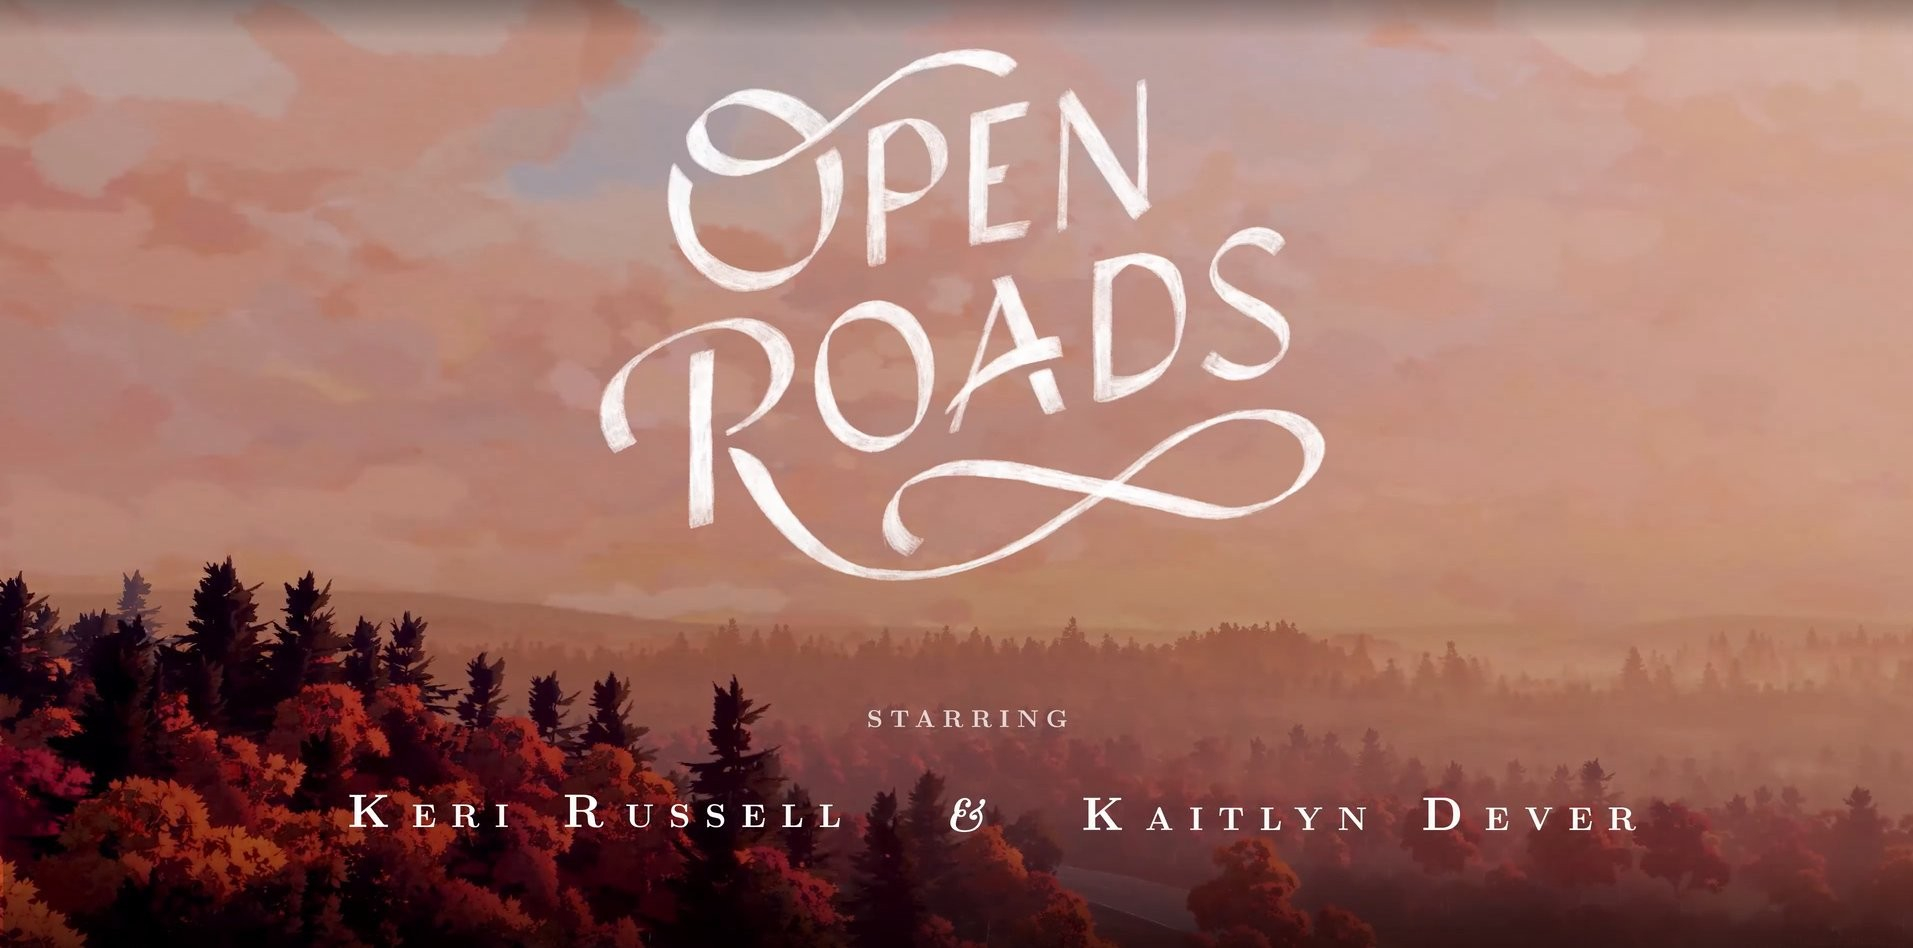 Open roads игра. Open Roads игра обзор. Open Roads Fullbright. Open Roads game русский.